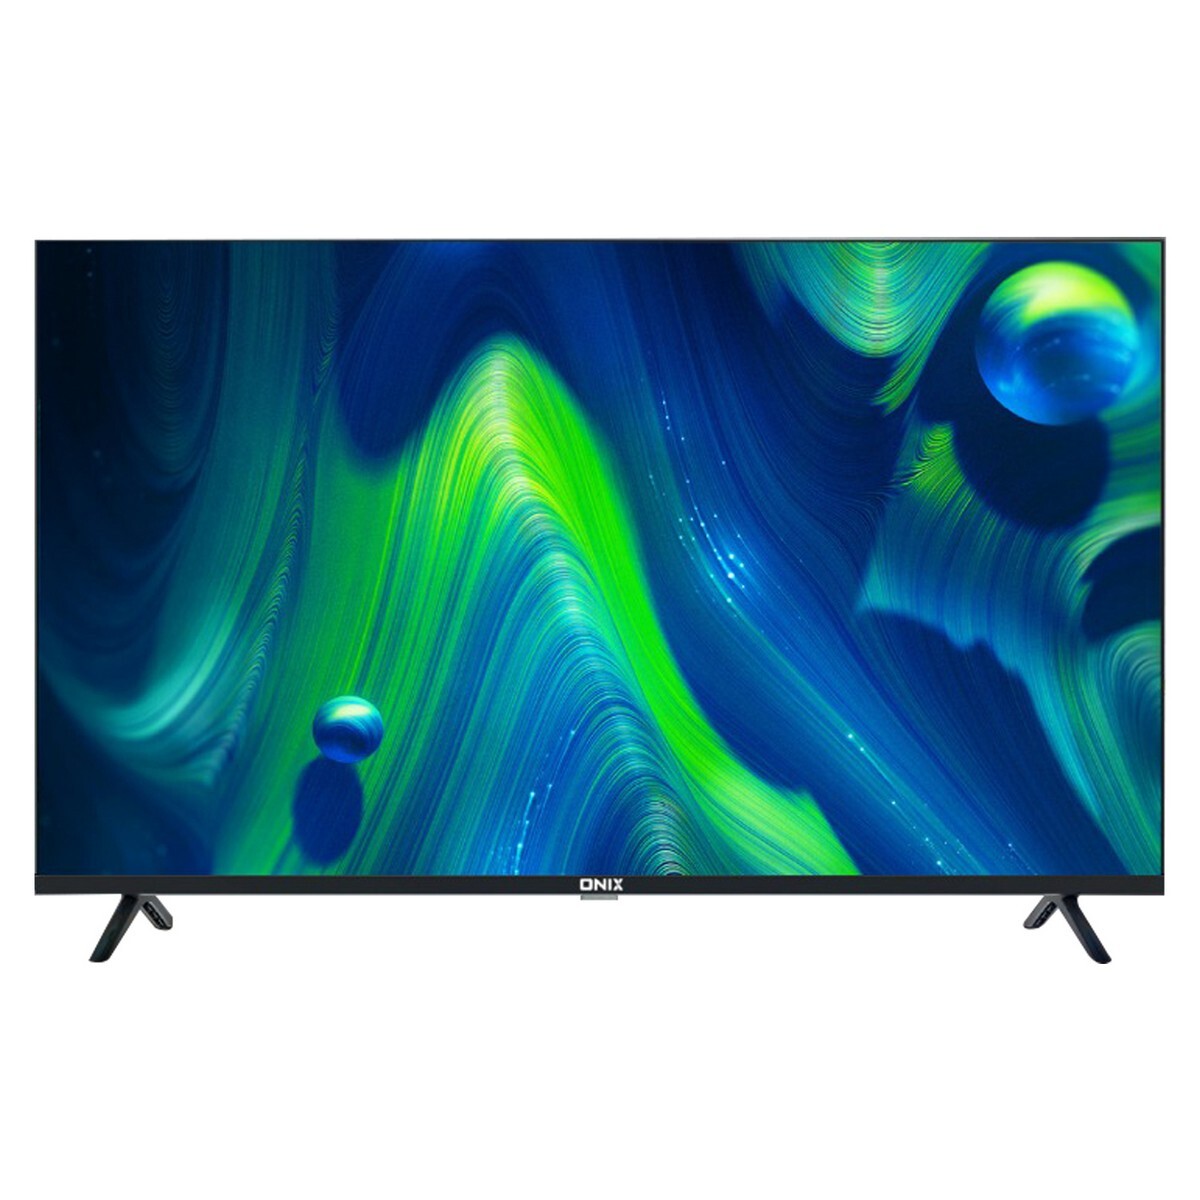 Onix Full HD LED Smart TV Liva 43"